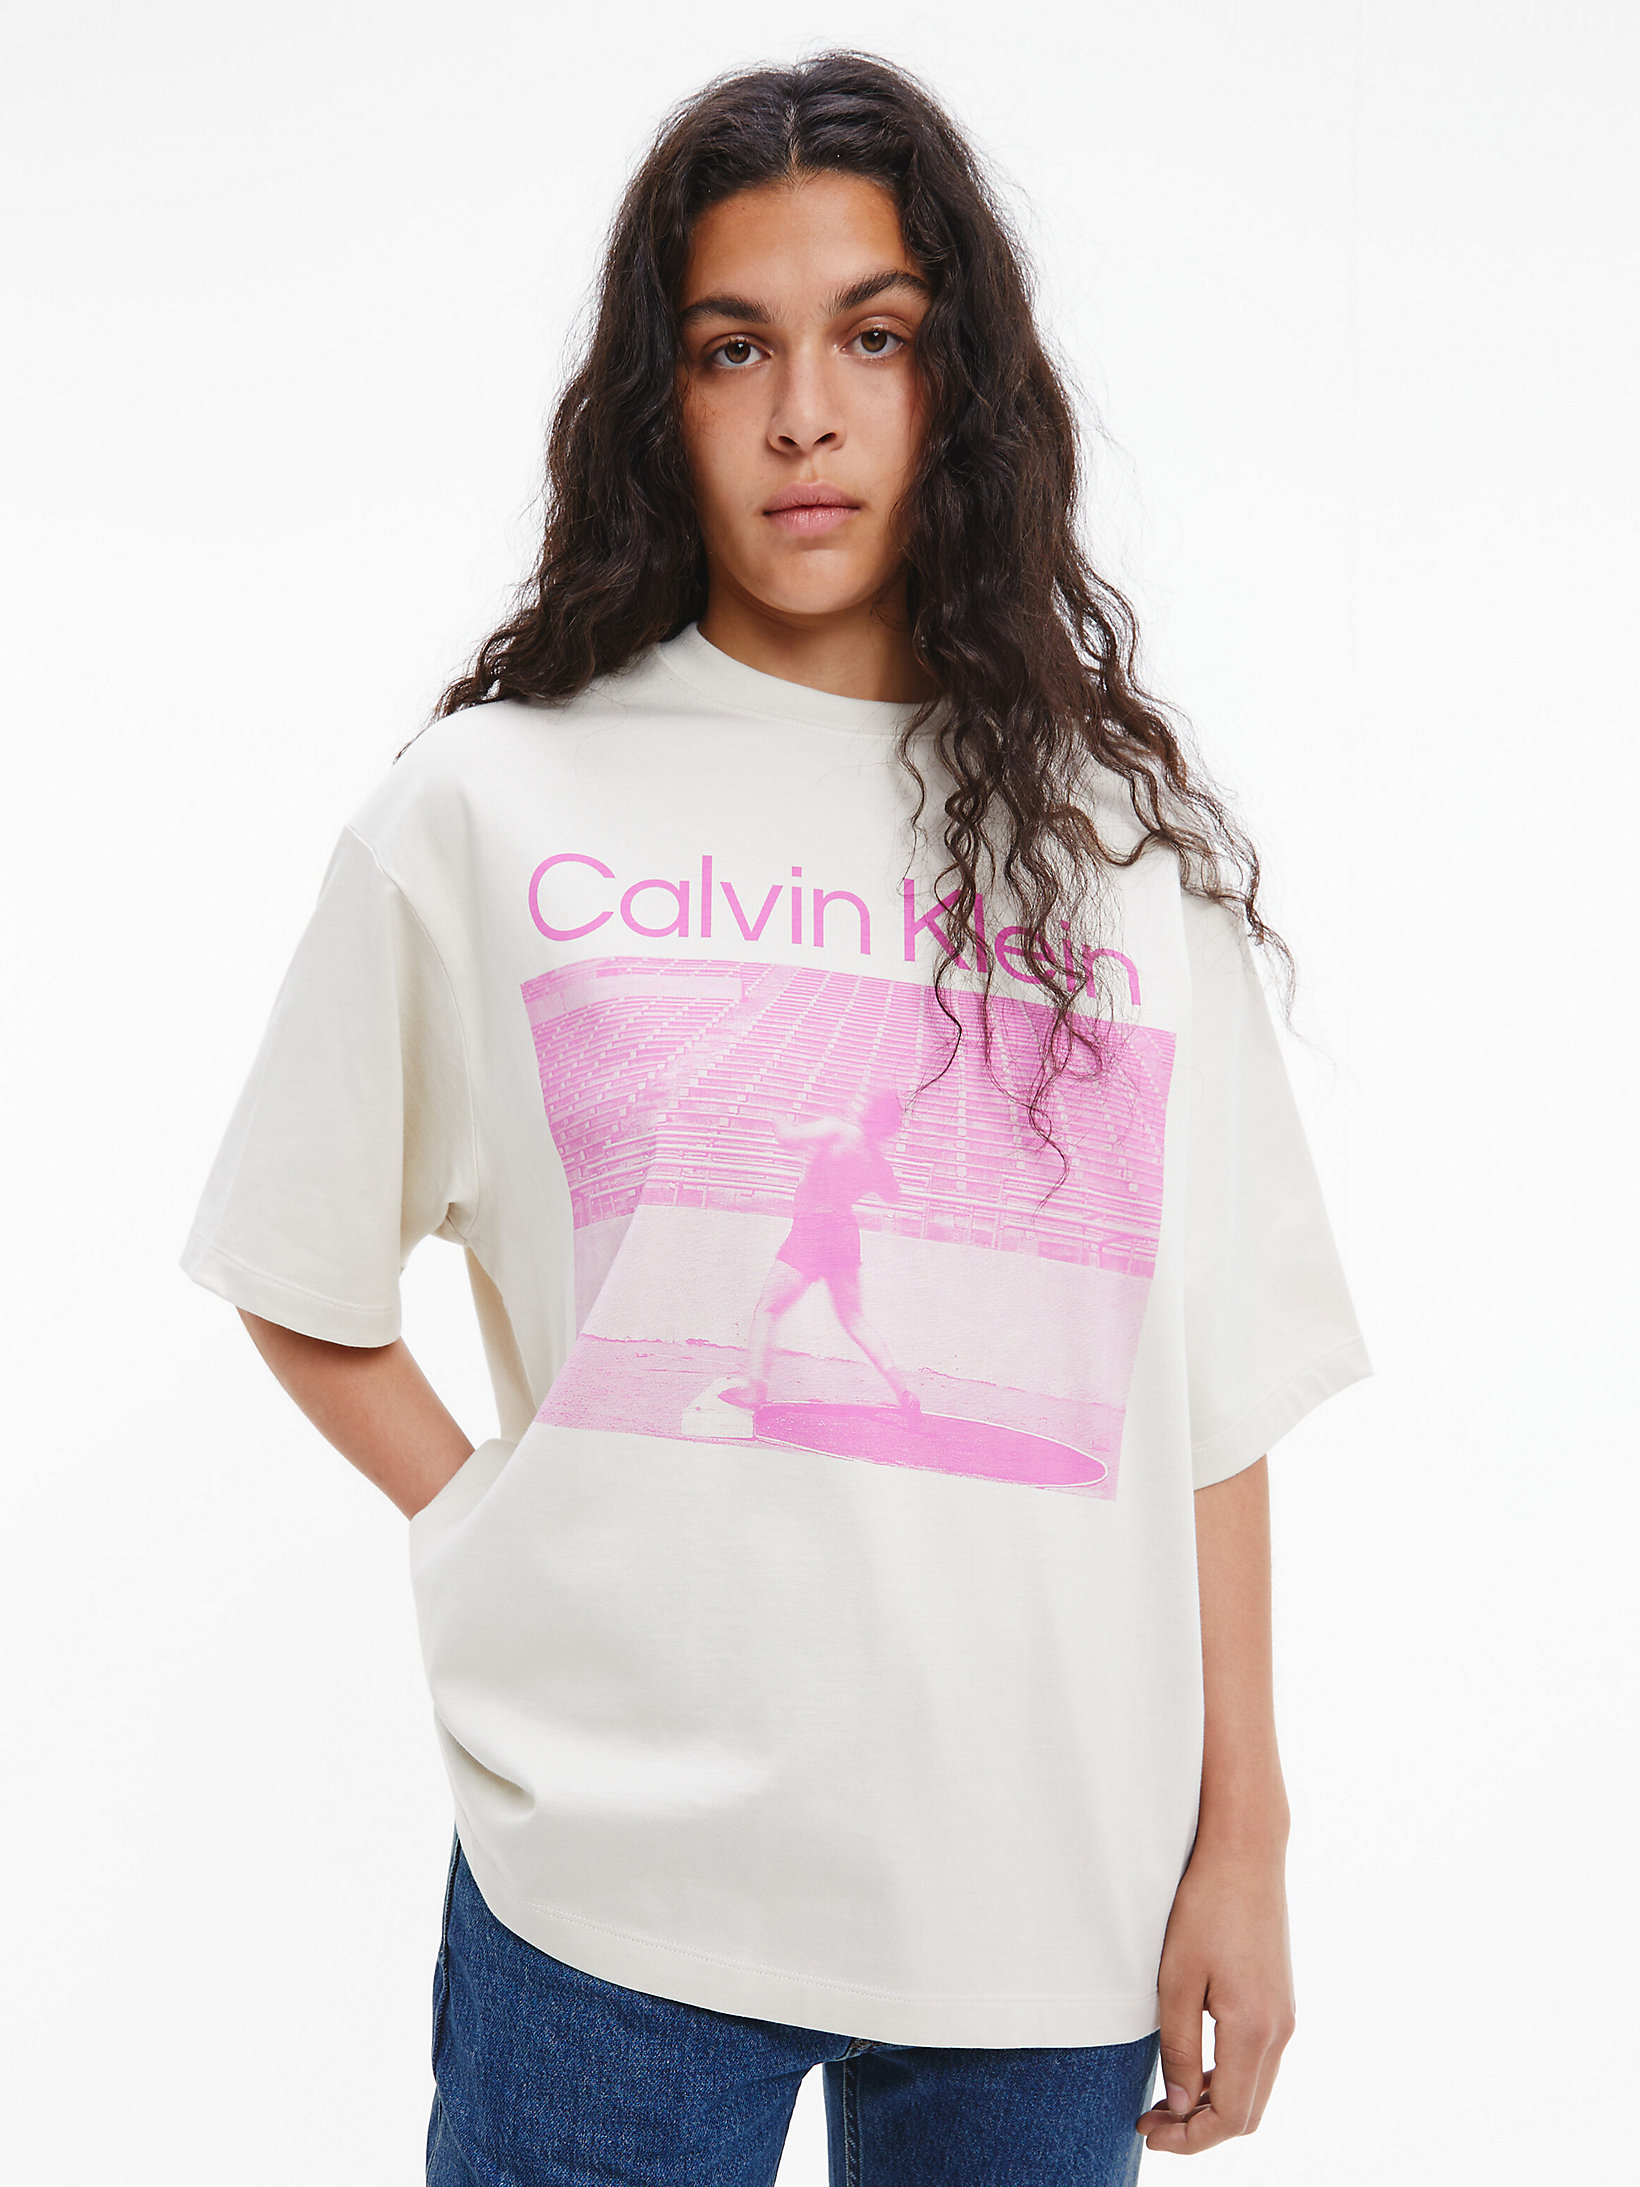 Bone White Unisex Printed T-Shirt - CK Standards undefined unisex Calvin Klein